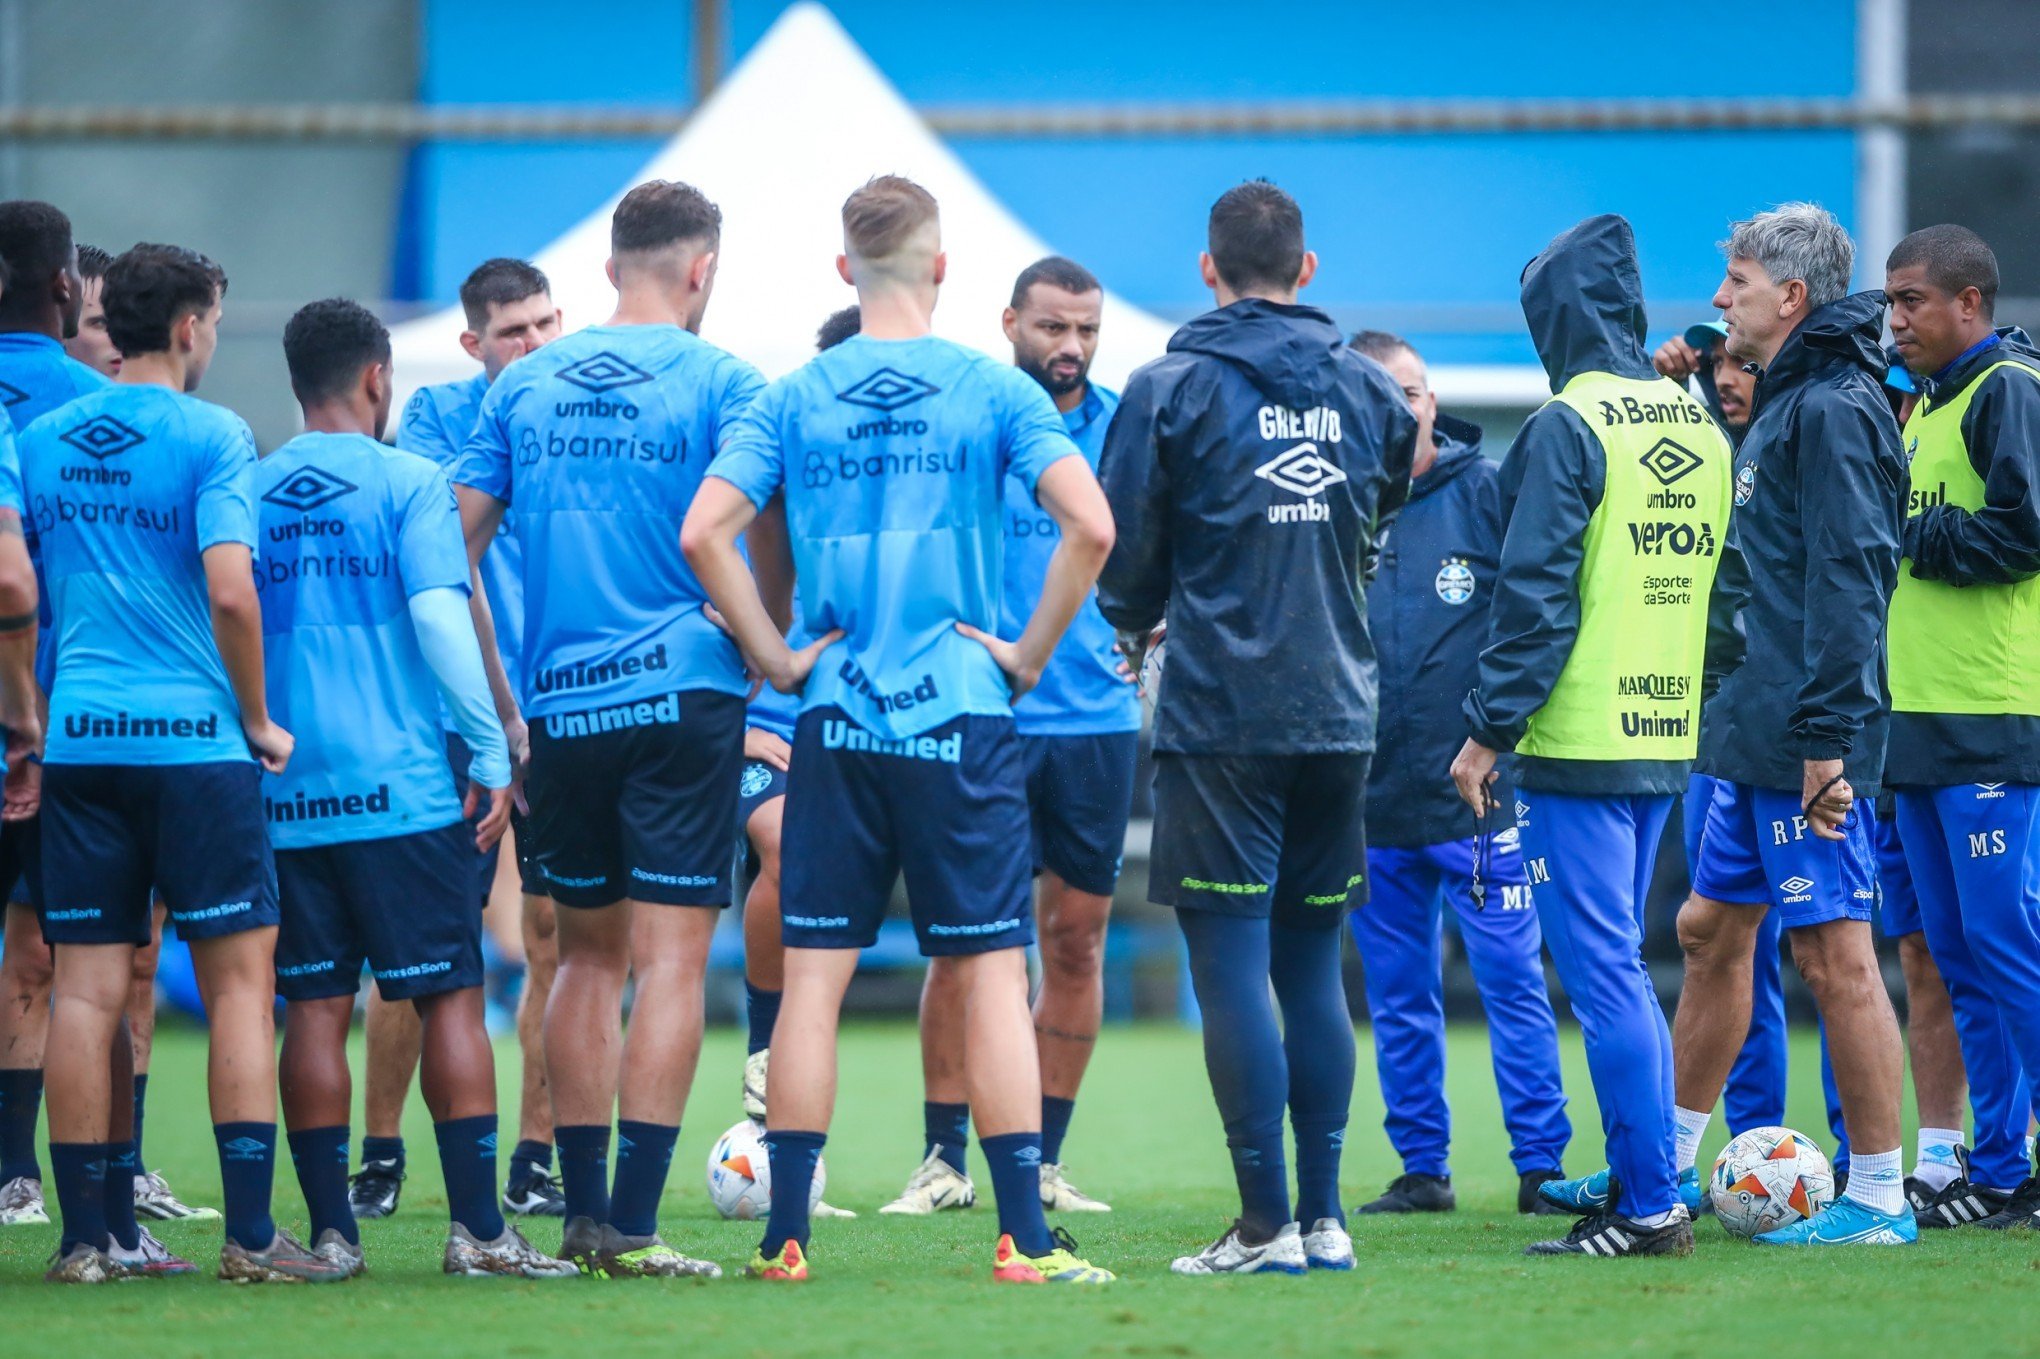 CATÁSTROFE NO RS: Grêmio deve treinar em Atibaia e jogar em Bragança Paulista após enchentes